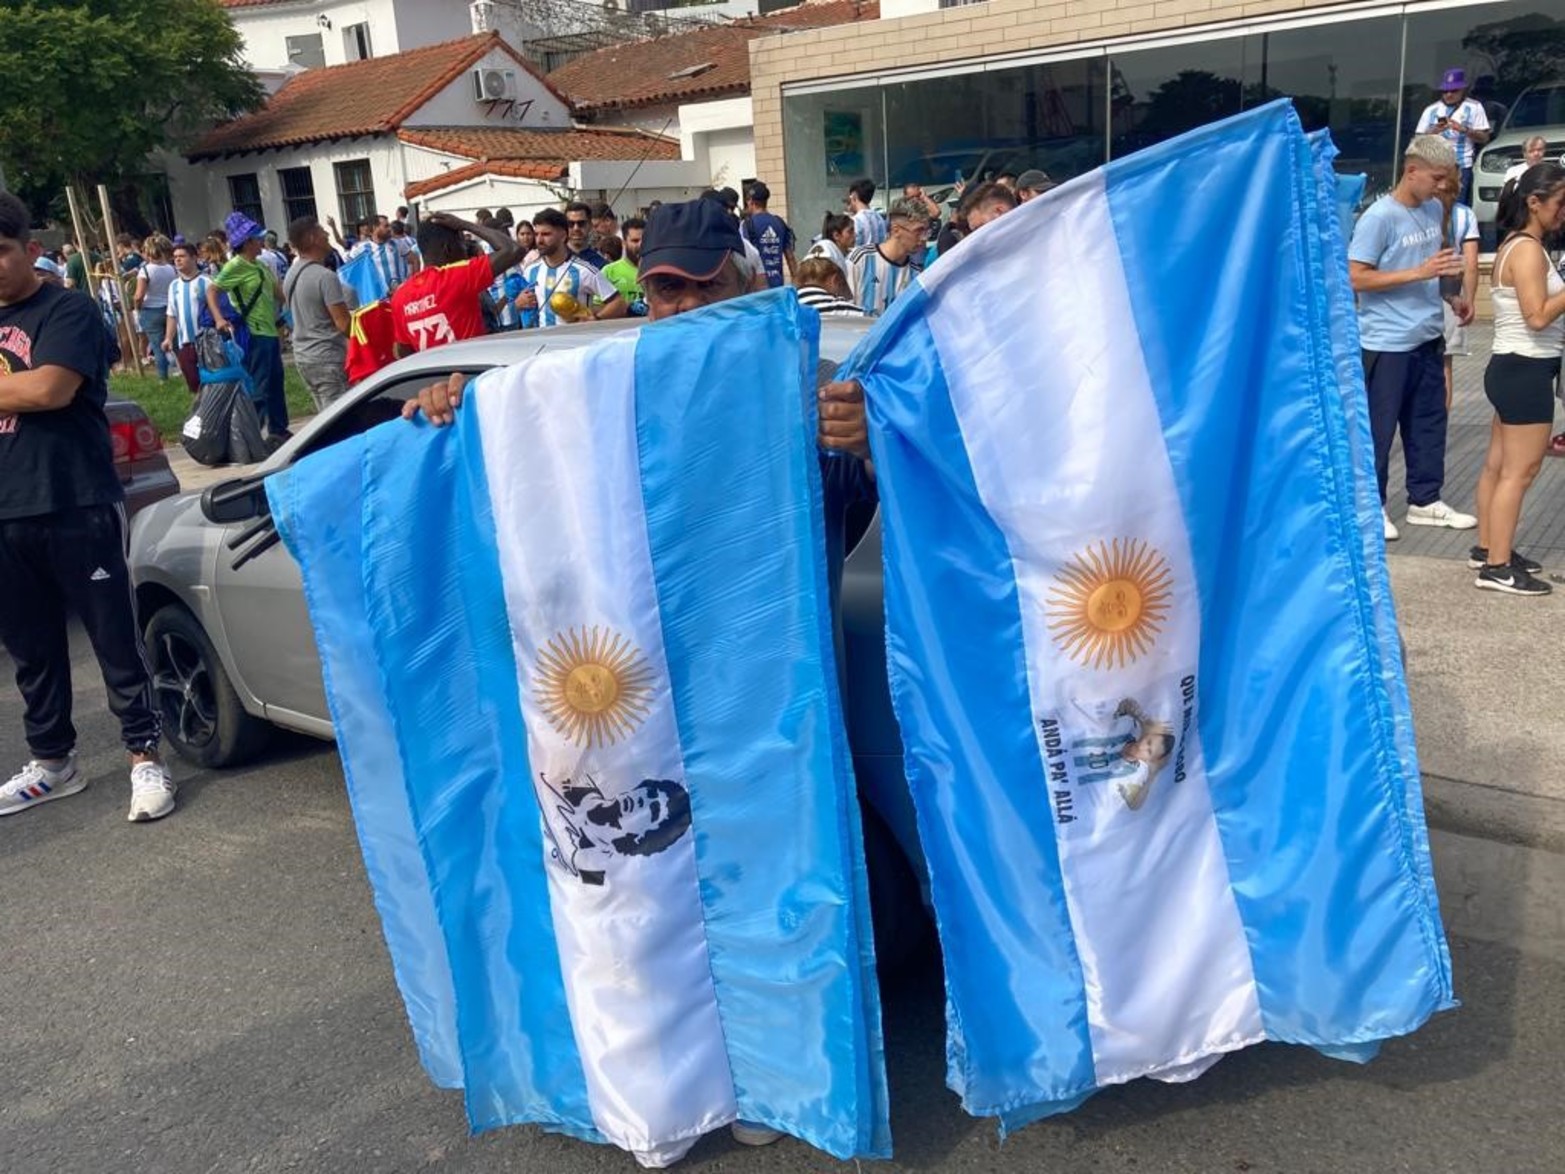 Gran cantidad de hinchas ya se acercan al estadio Monumental de Nuñez. La selección argentina se mide ante Panamá, en un amistoso en el que el fútbol es la excusa perfecta para que los campeones del mundo celebren el título ante su público.